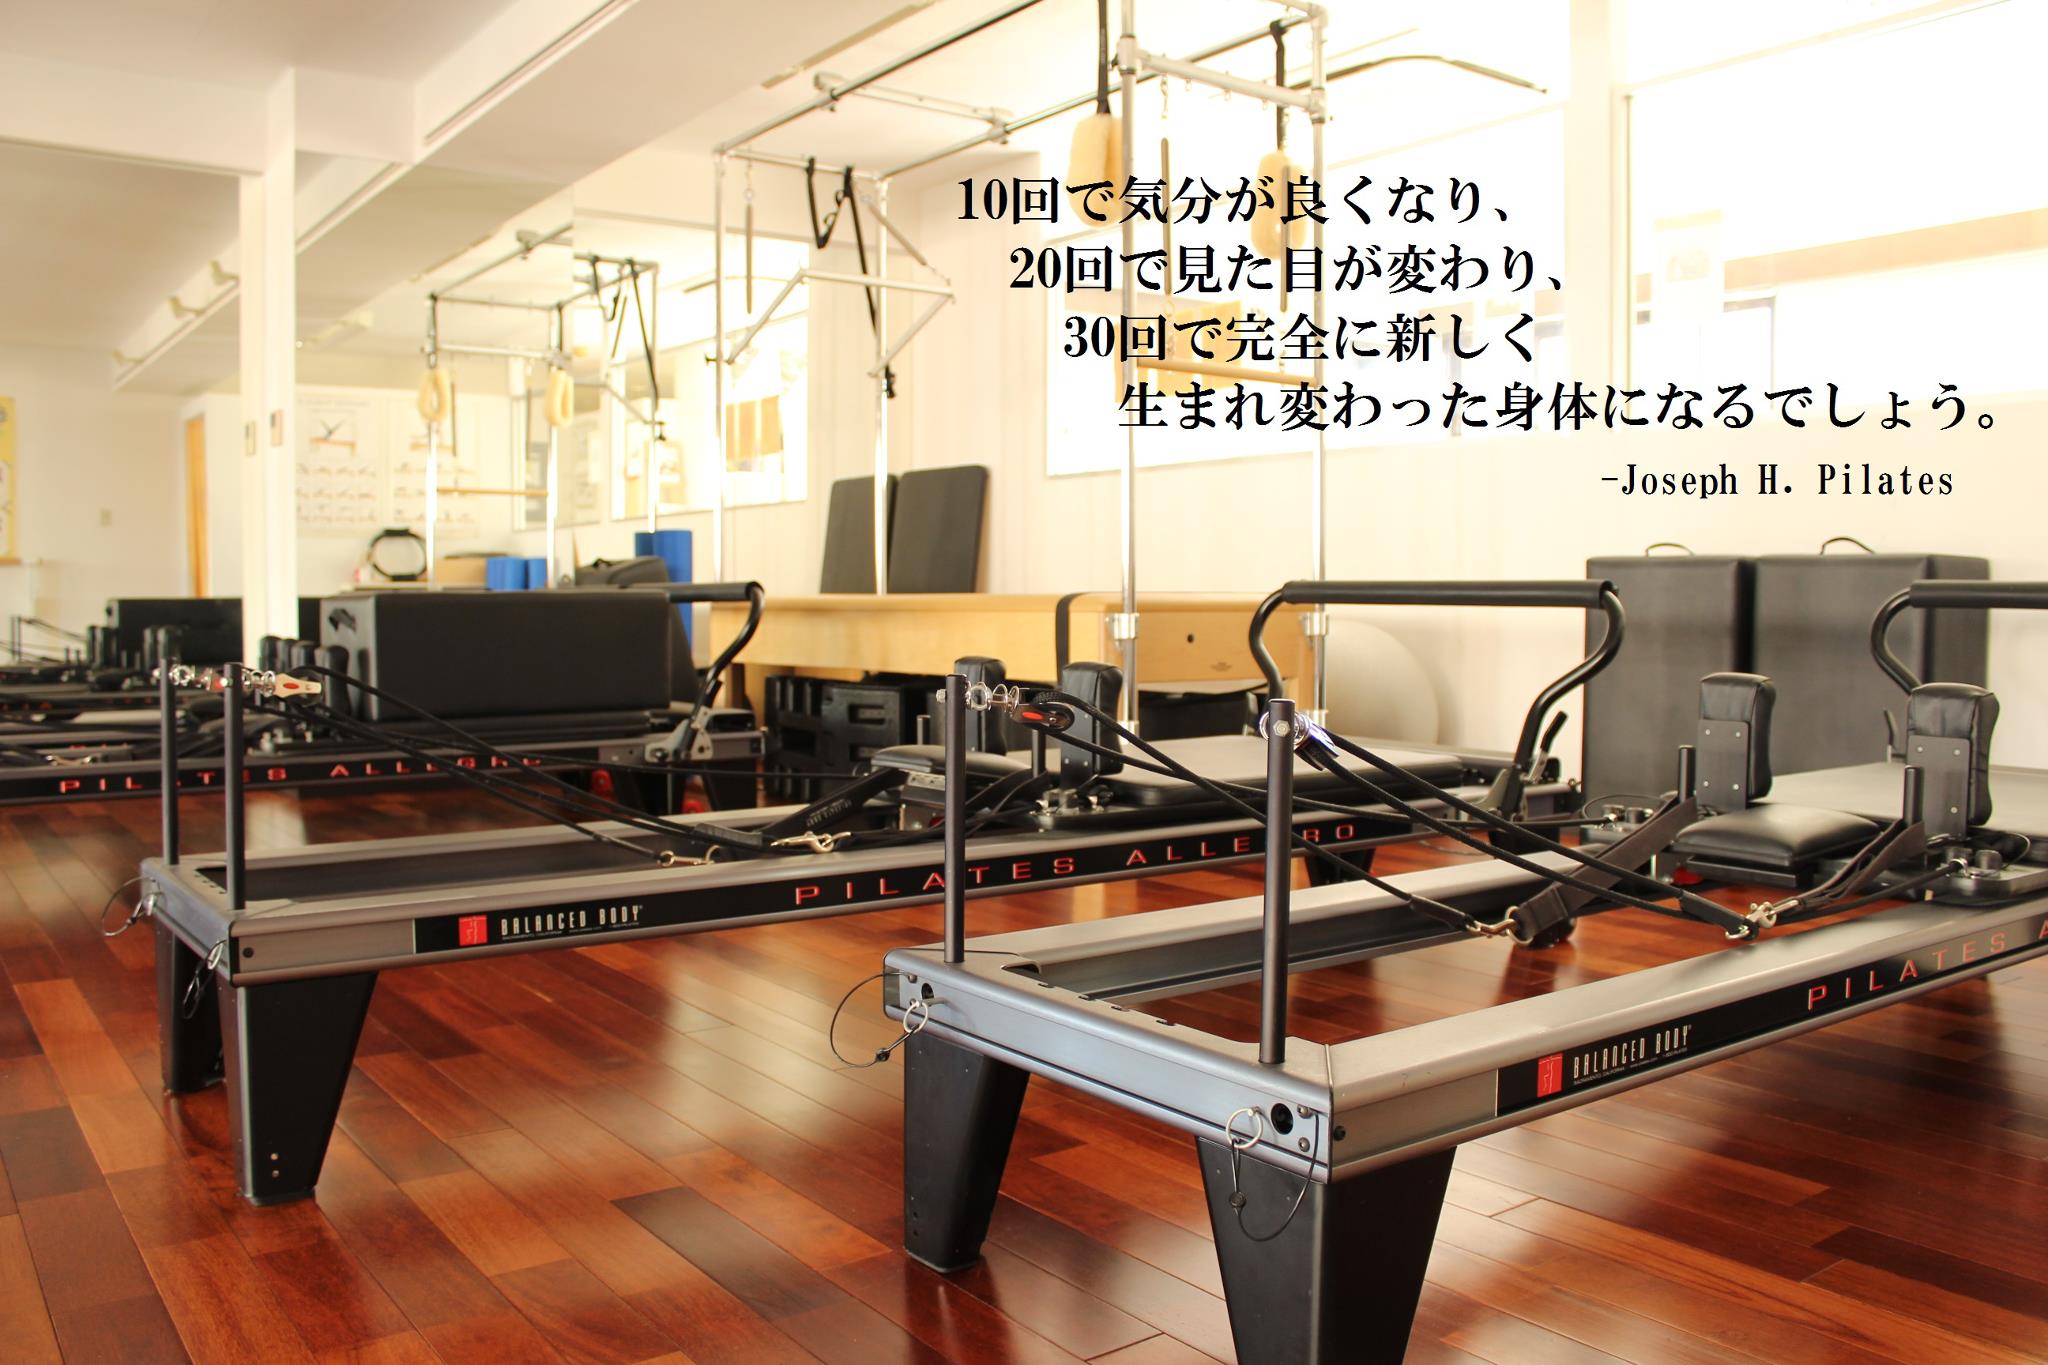 BASI Pilates Shibuya Image